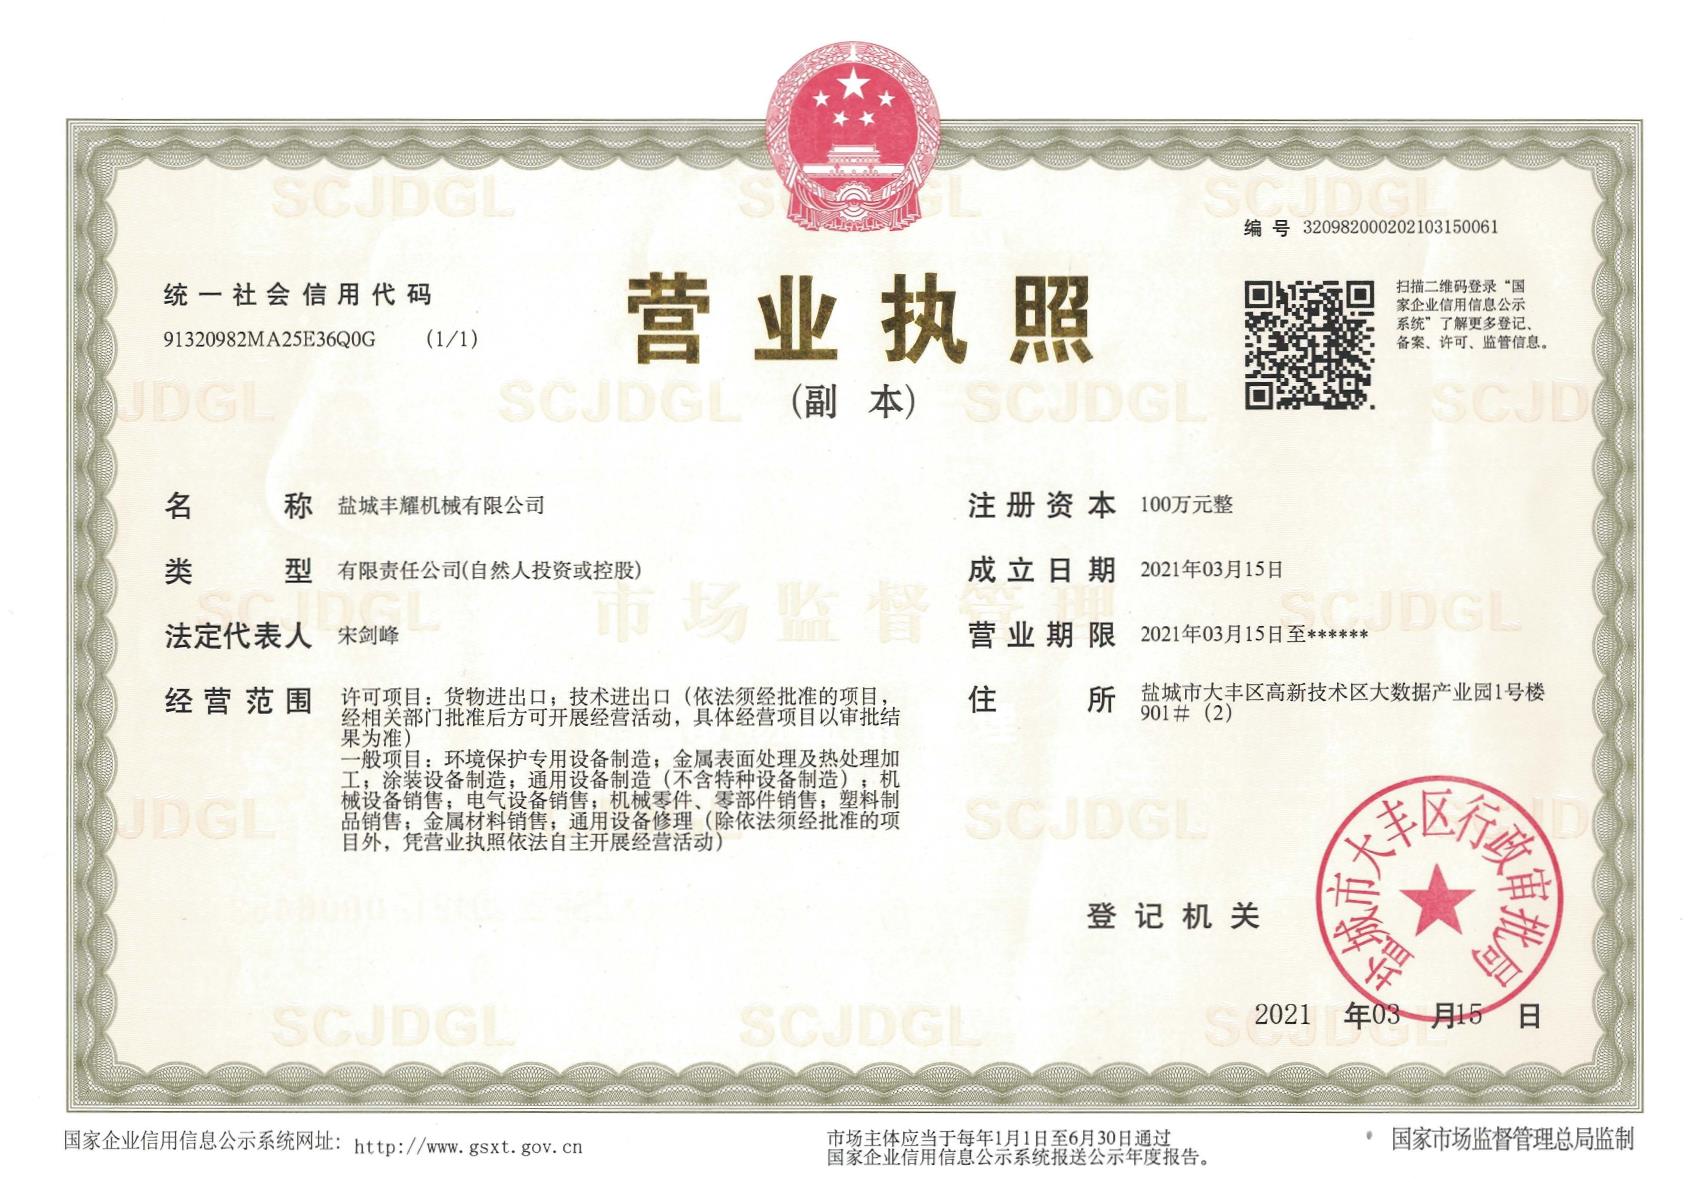 Yancheng Fengyao Machinery Co., Ltd.